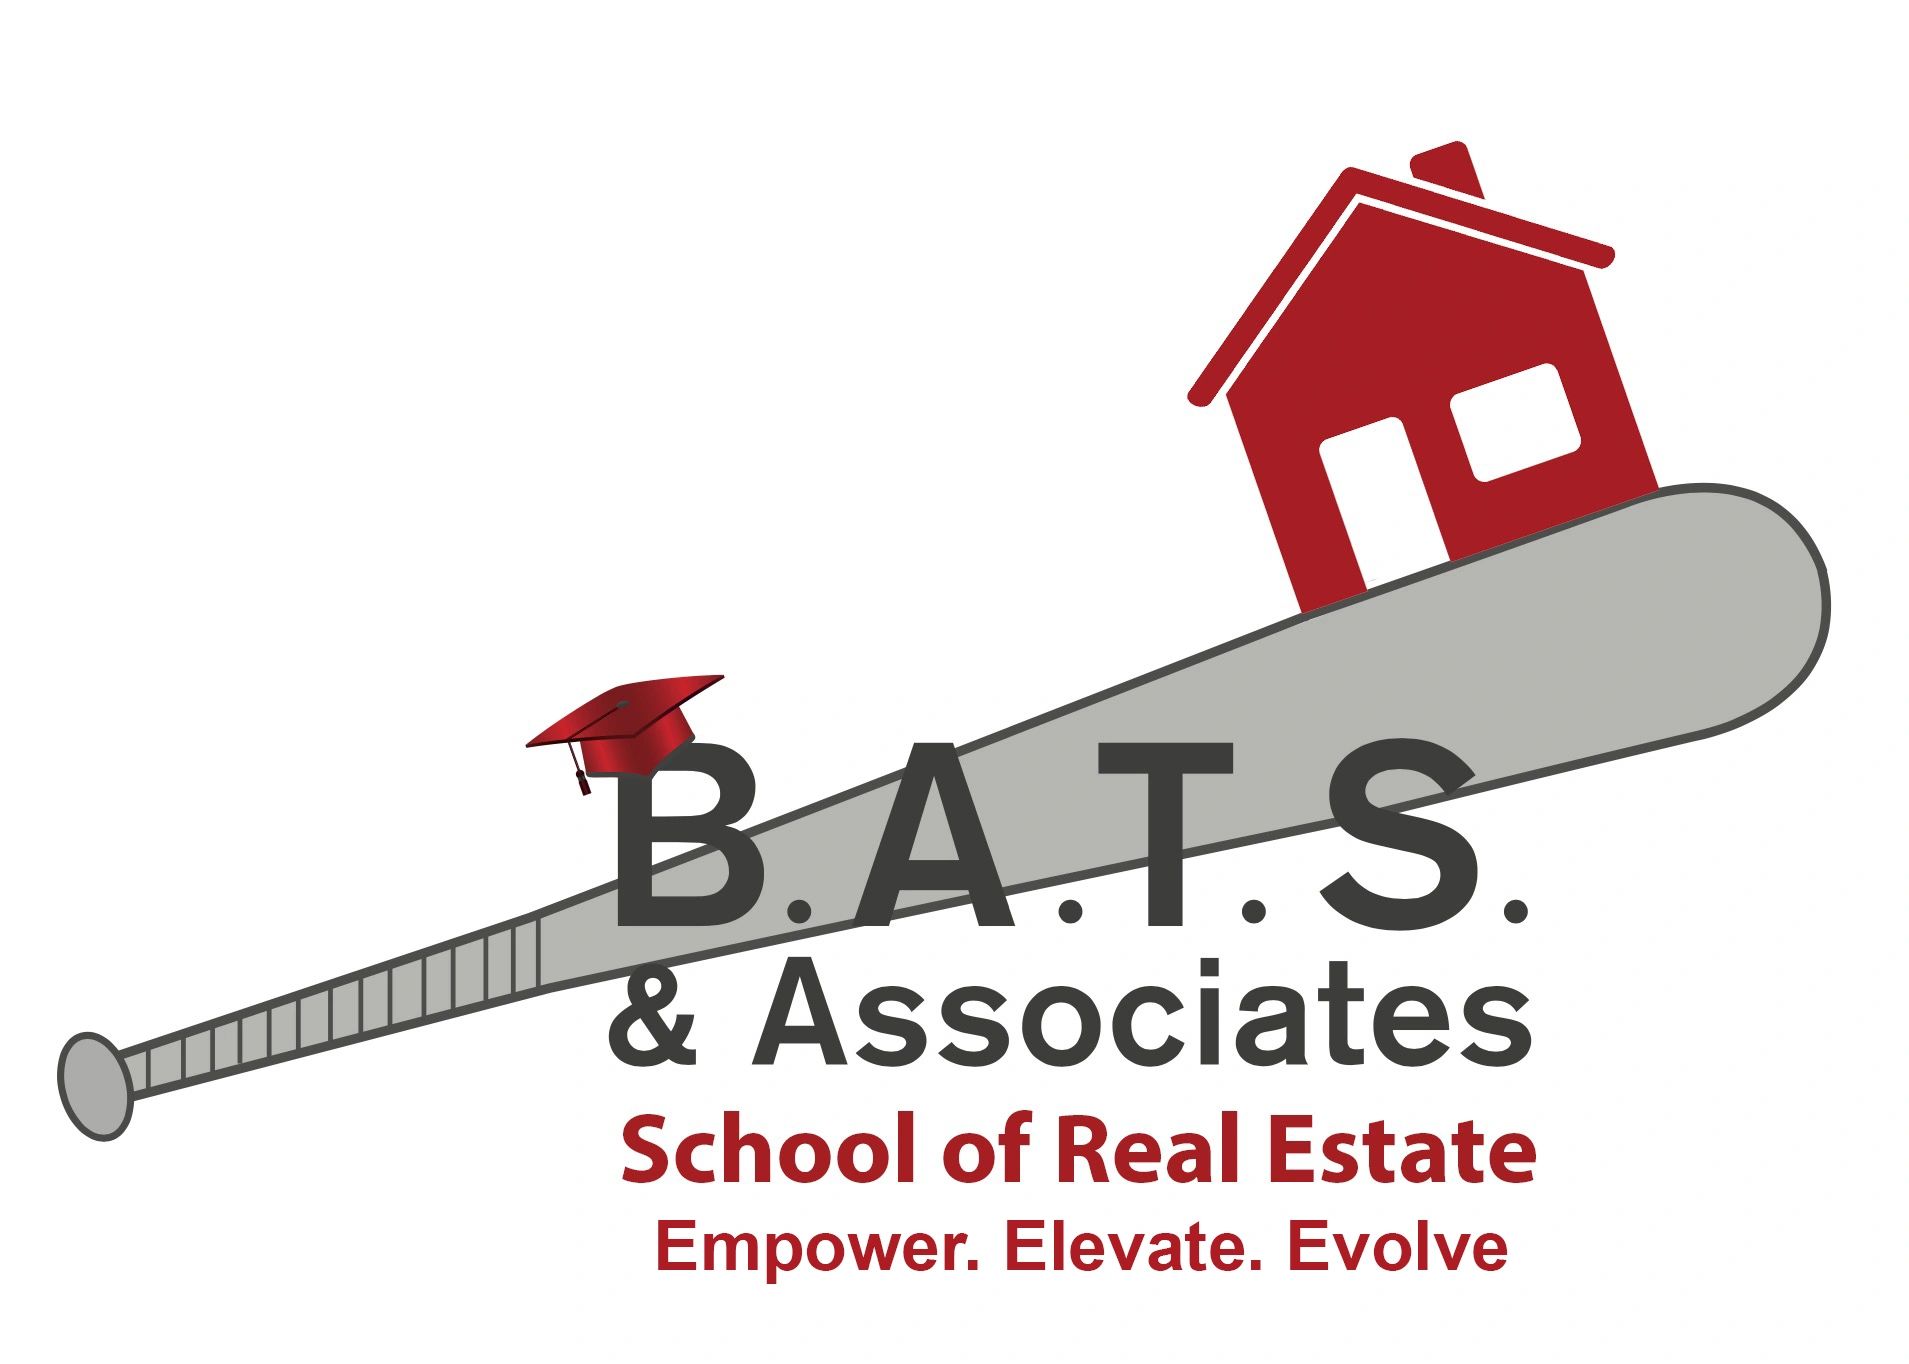 BATS & Associates University